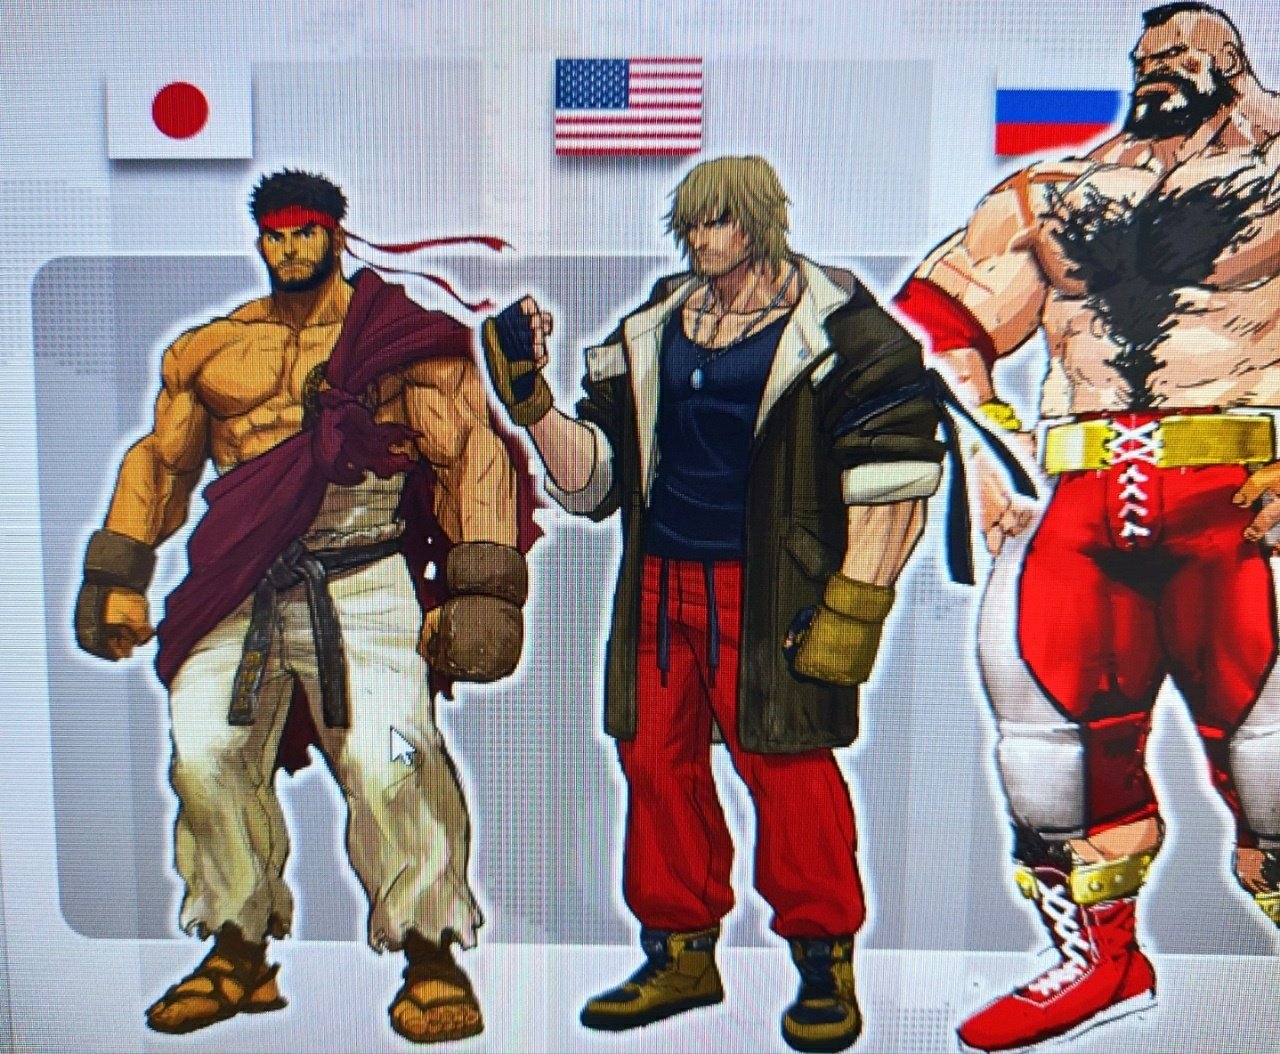 Todos os personagens de Street Fighter 6